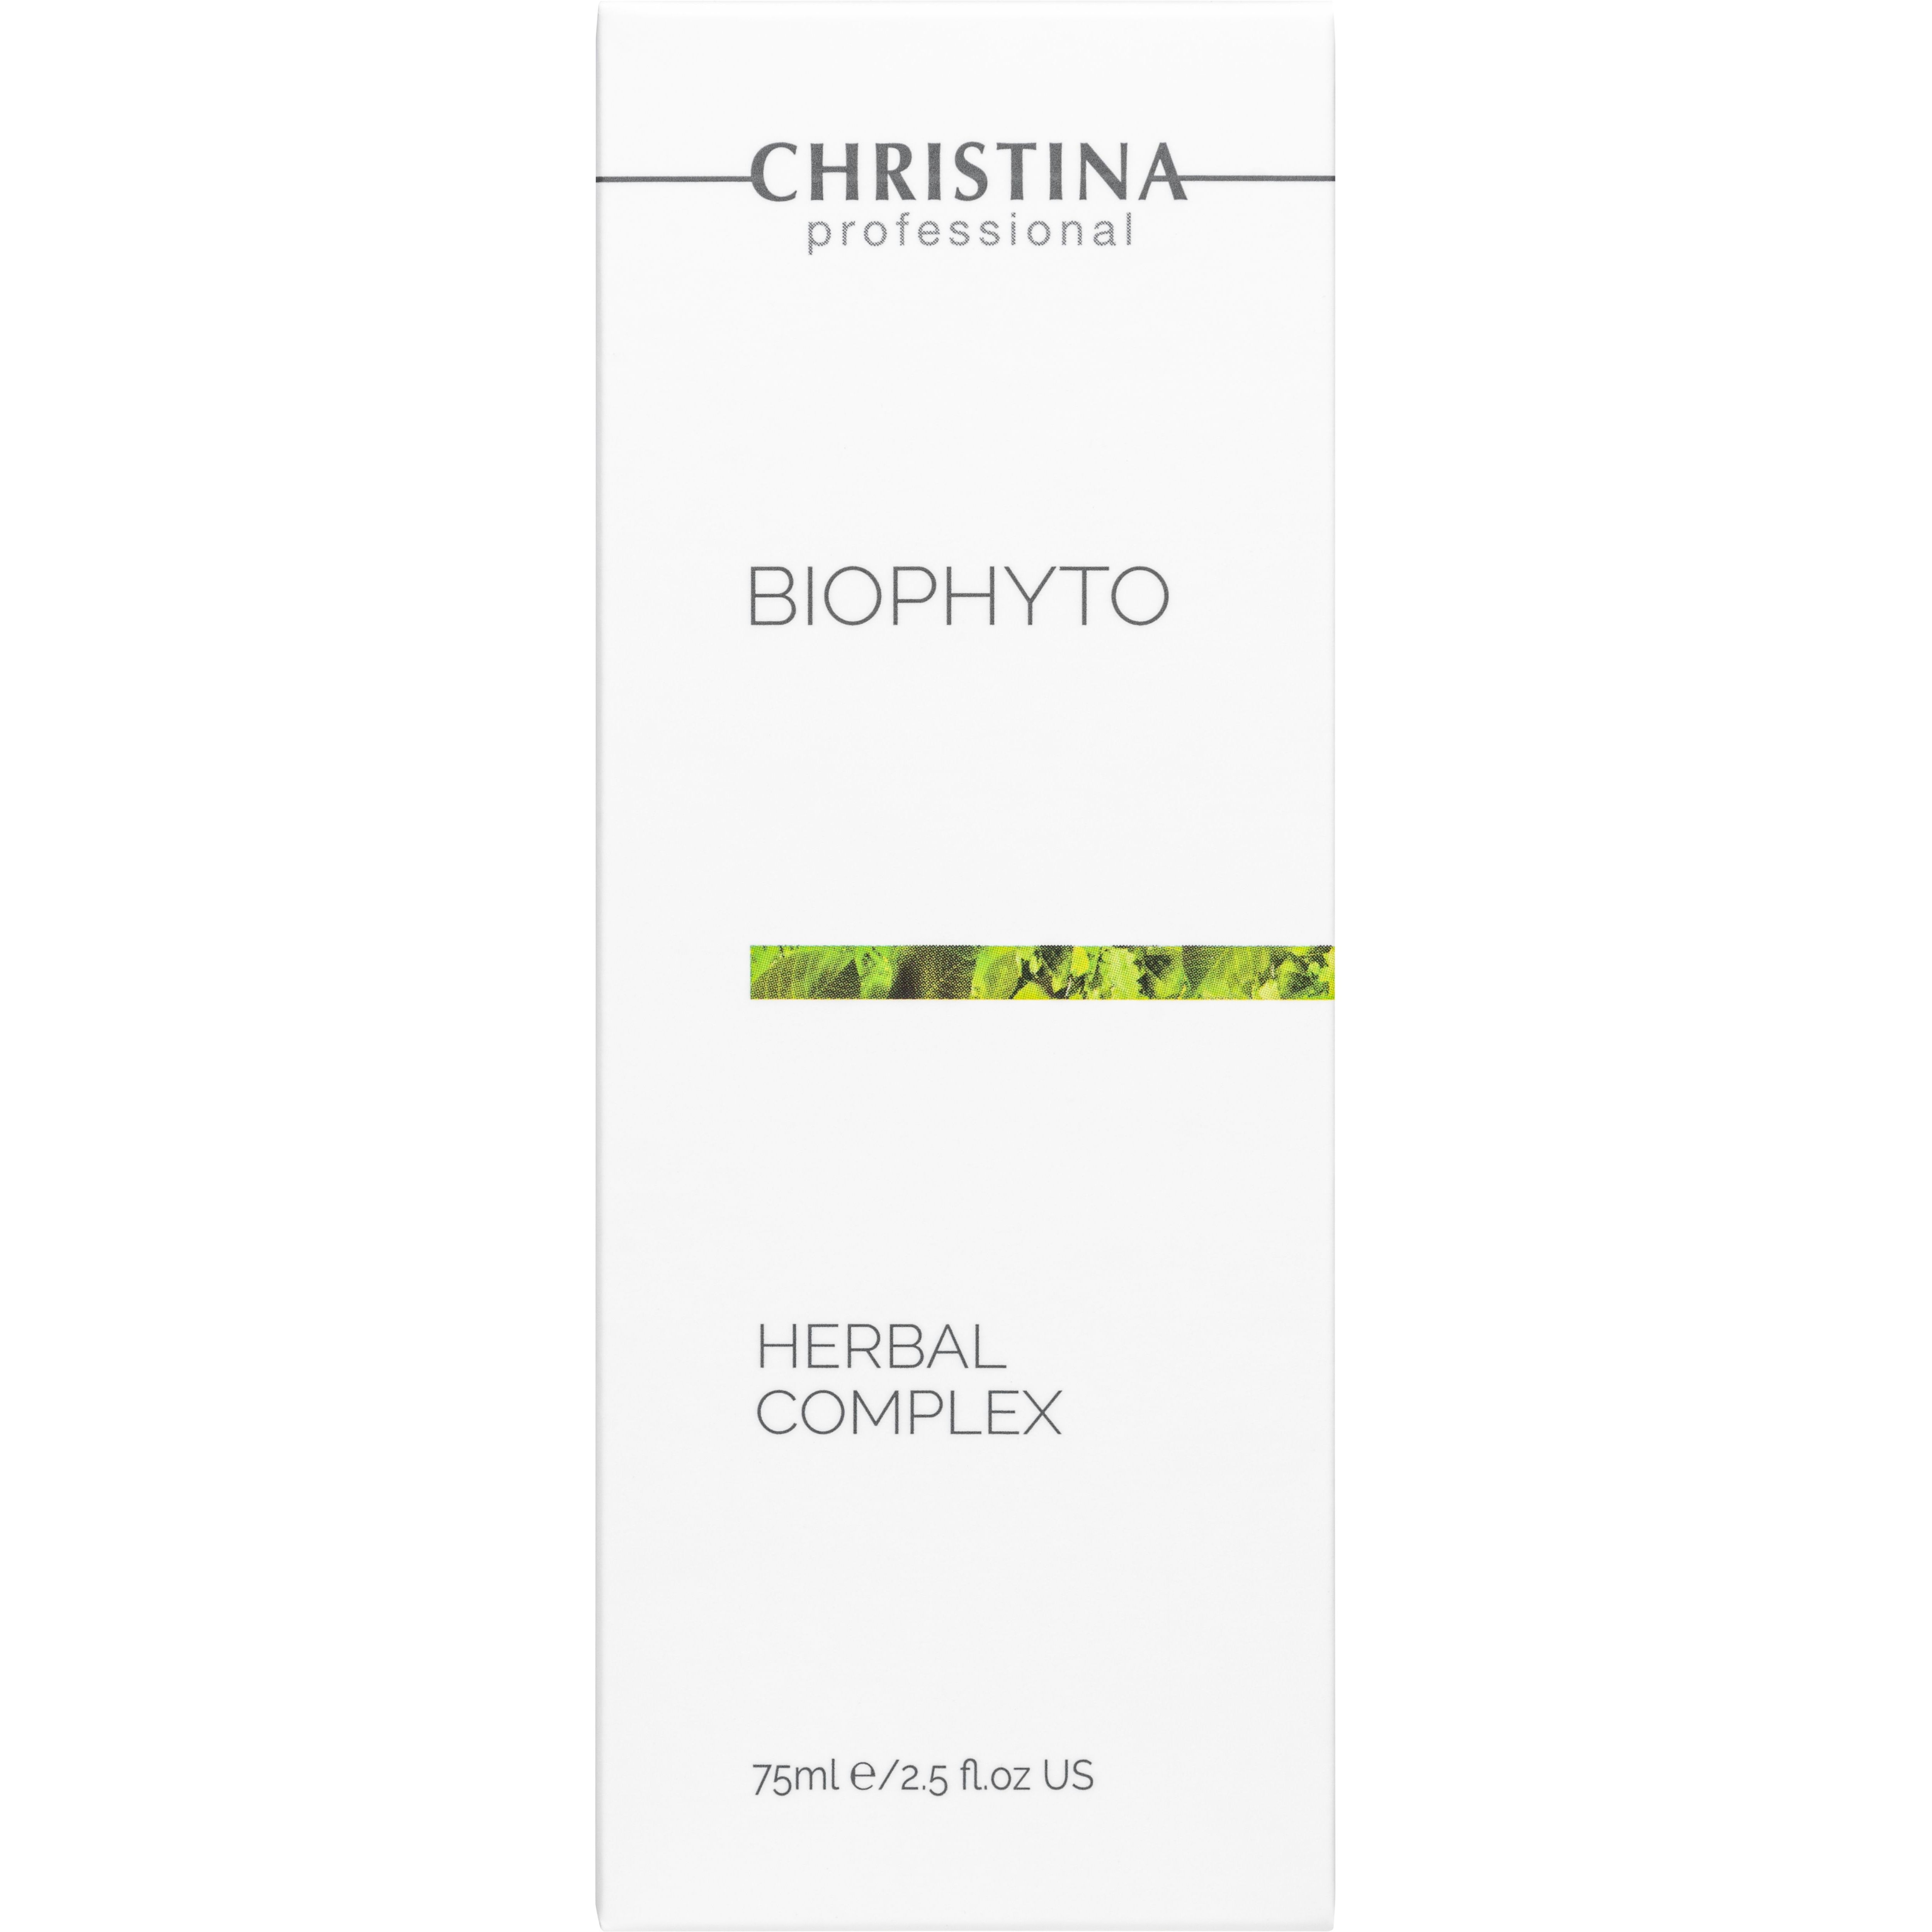 Пилинг растительный для лица Christina BioPhyto Herbal Complex 75 мл - фото 2